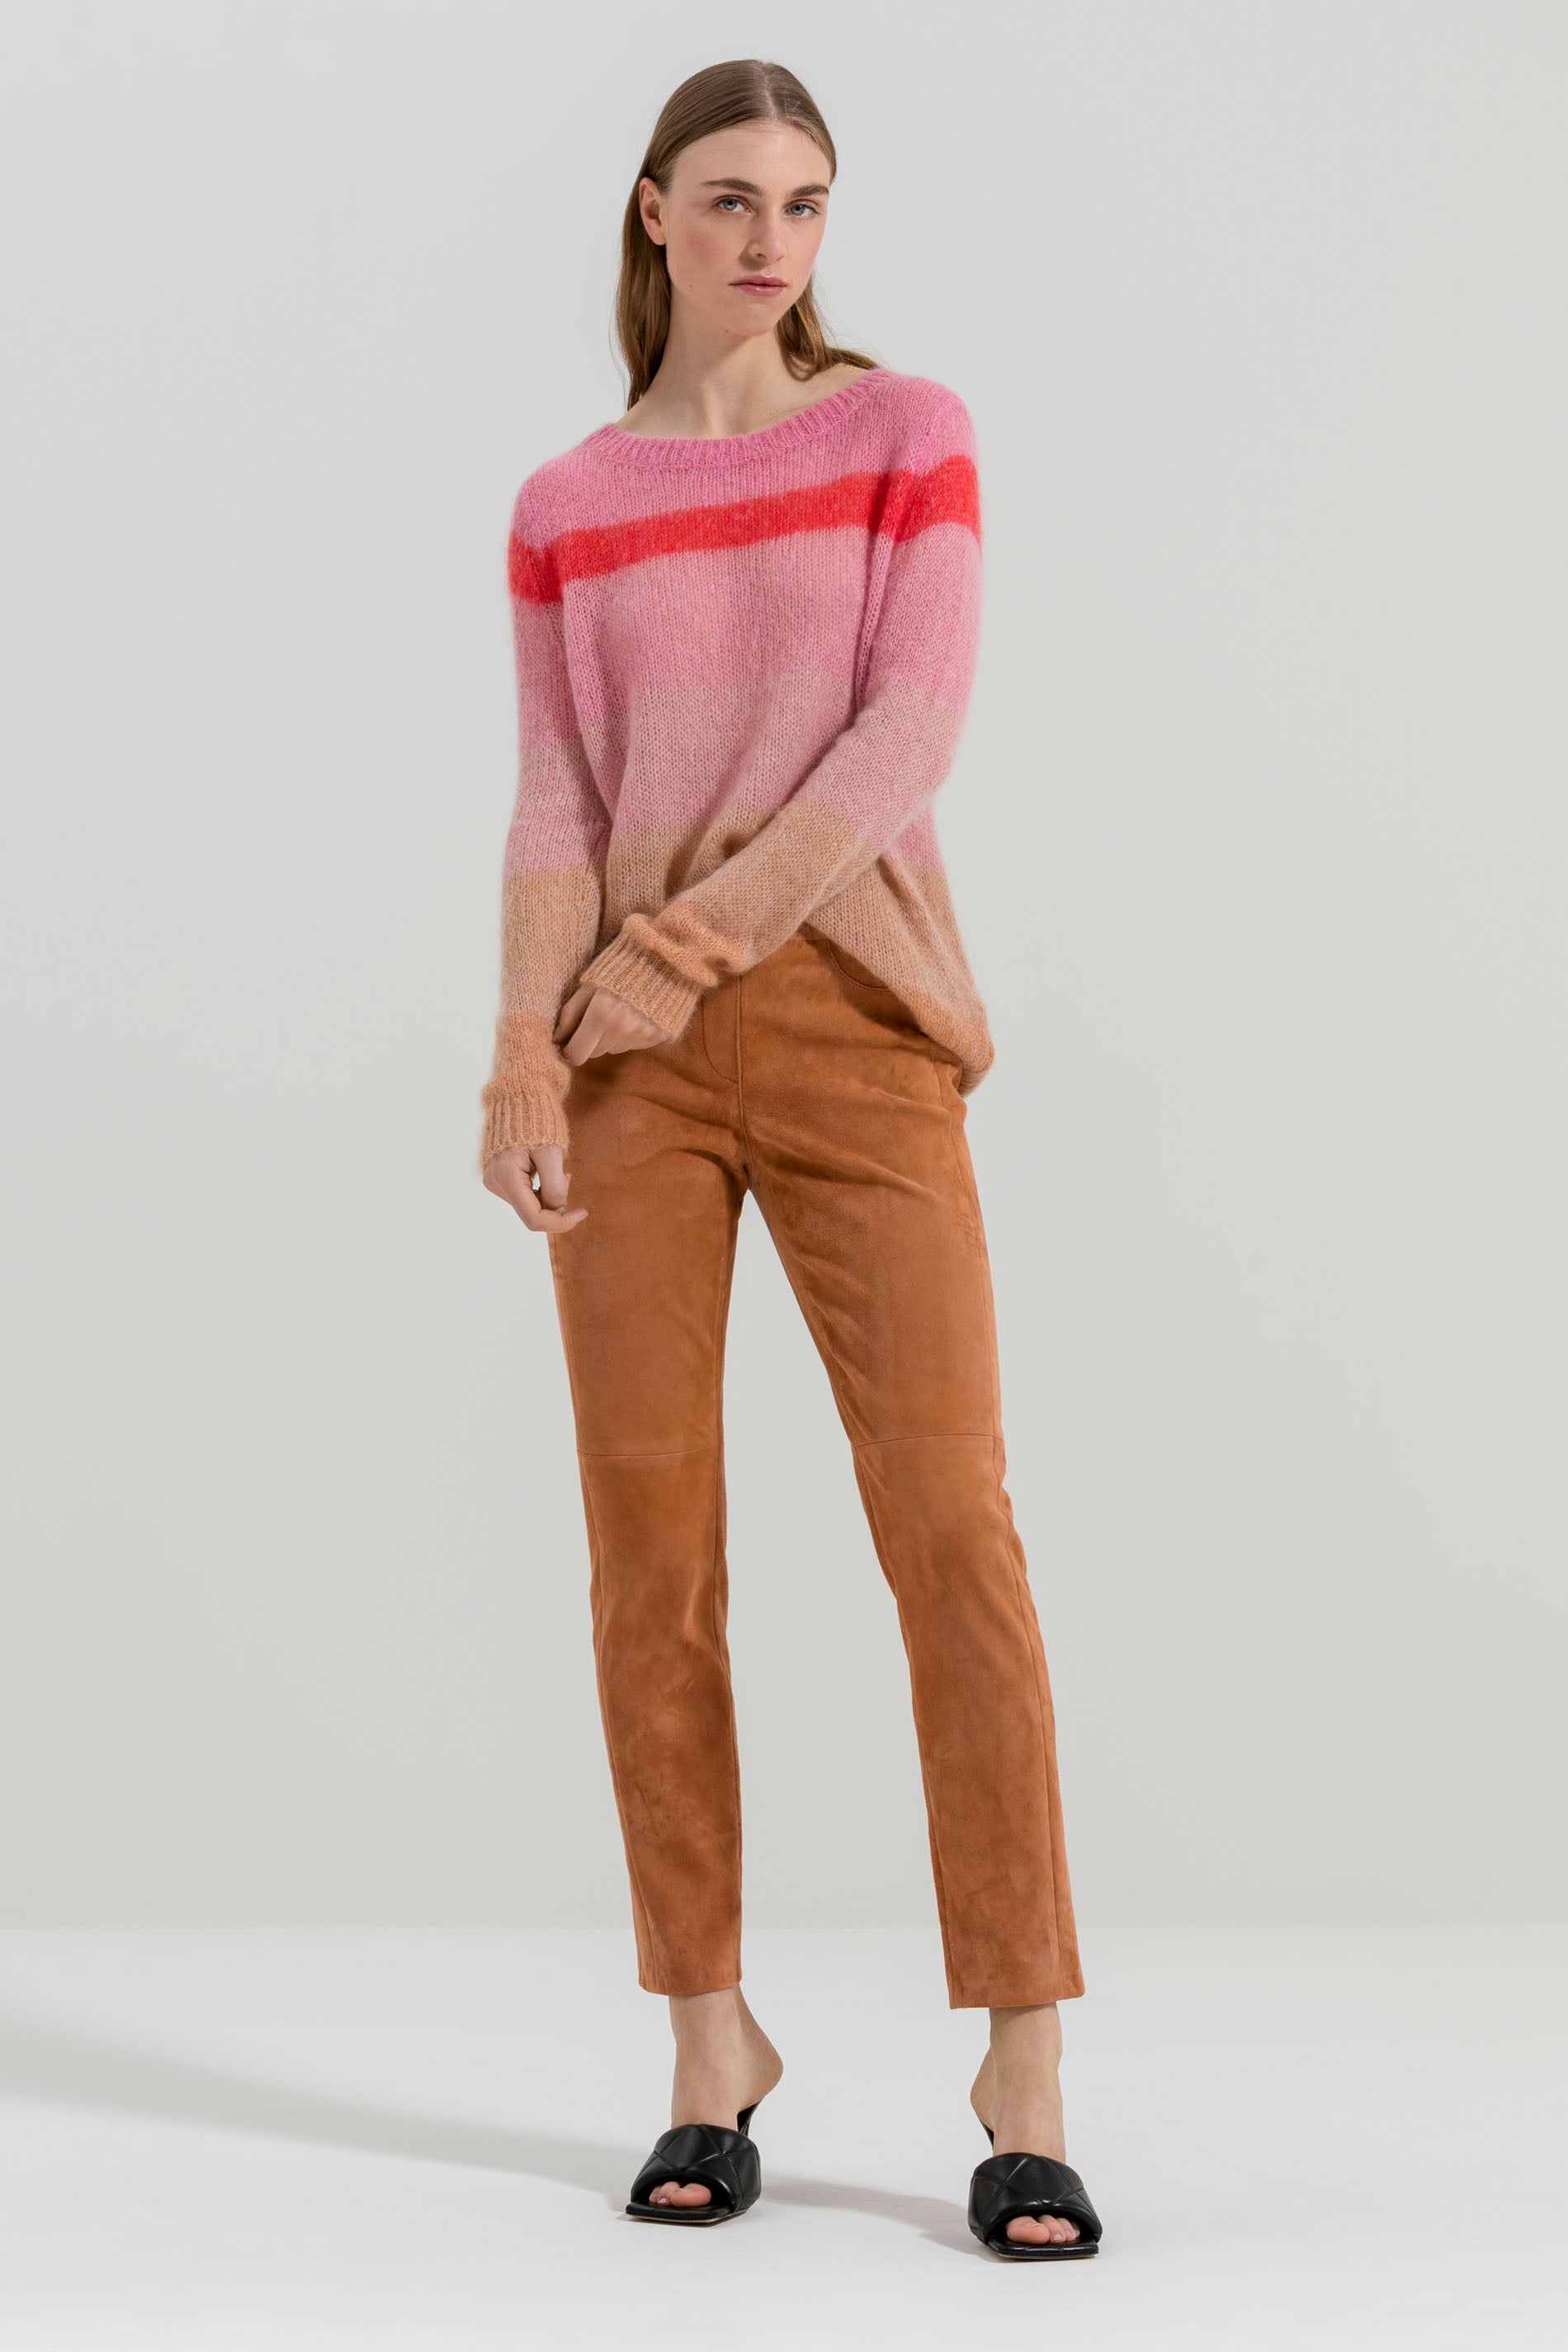 LUISA CERANO-OUTLET-SALE-Pullover mit Streifen-Strick-34-candy pink / multi-by-ARCHIVIST